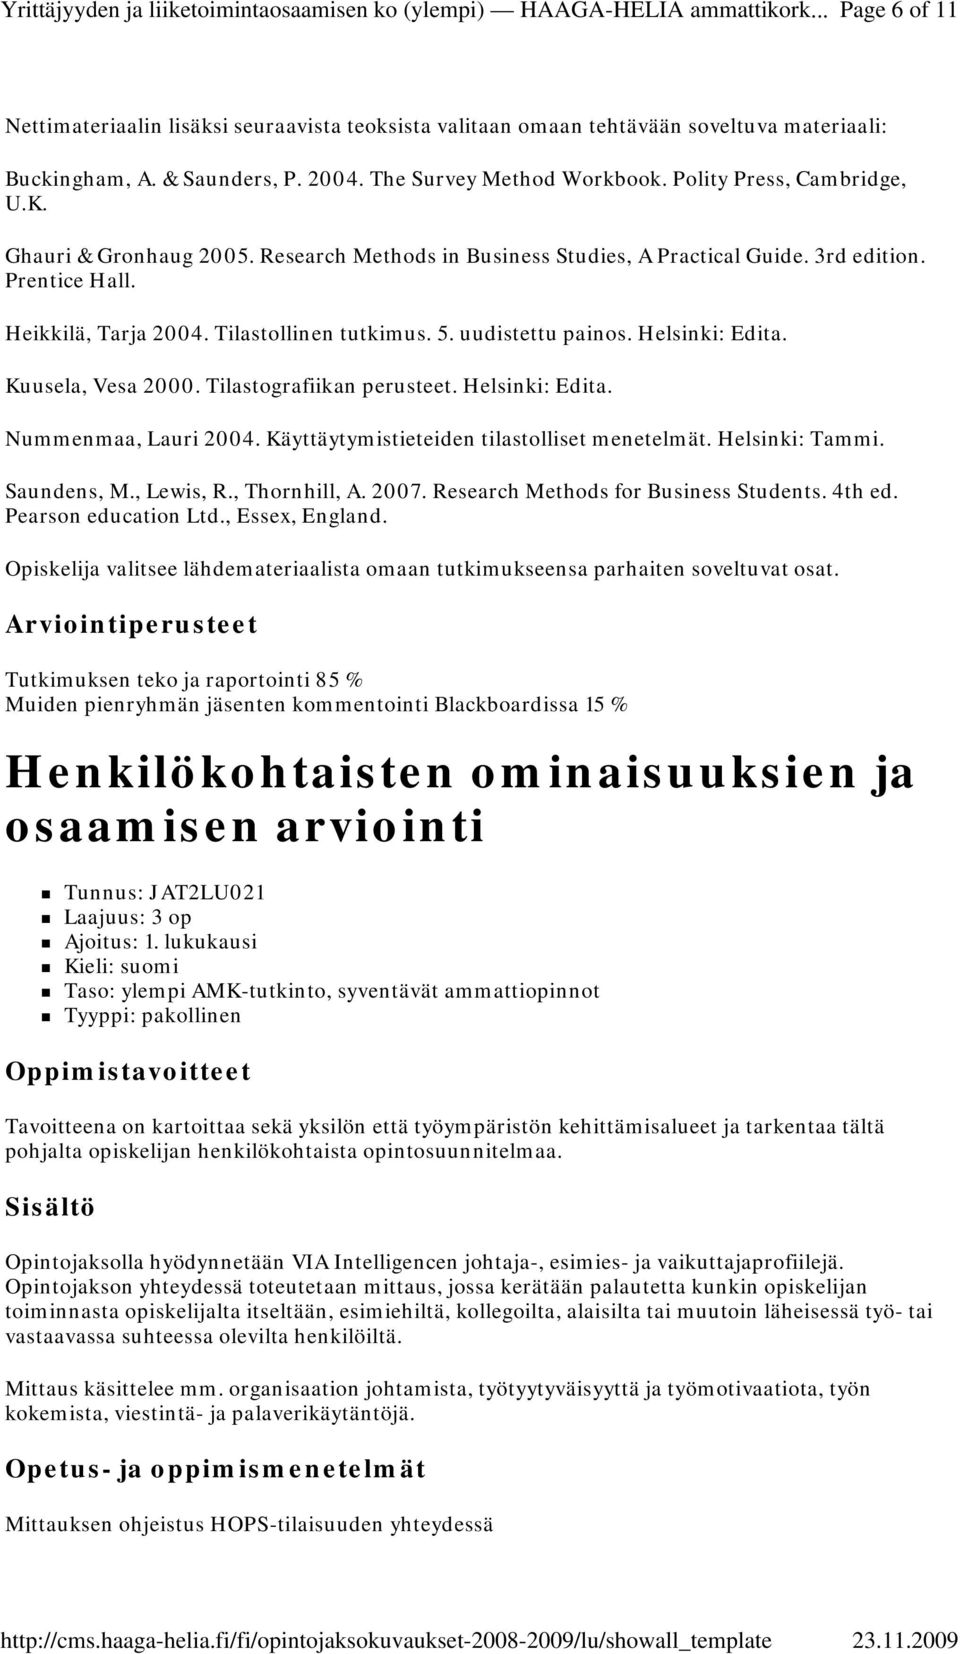 Kuusela, Vesa 2000. Tilastografiikan perusteet. Helsinki: Edita. Nummenmaa, Lauri 2004. Käyttäytymistieteiden tilastolliset menetelmät. Helsinki: Tammi. Saundens, M., Lewis, R., Thornhill, A. 2007.